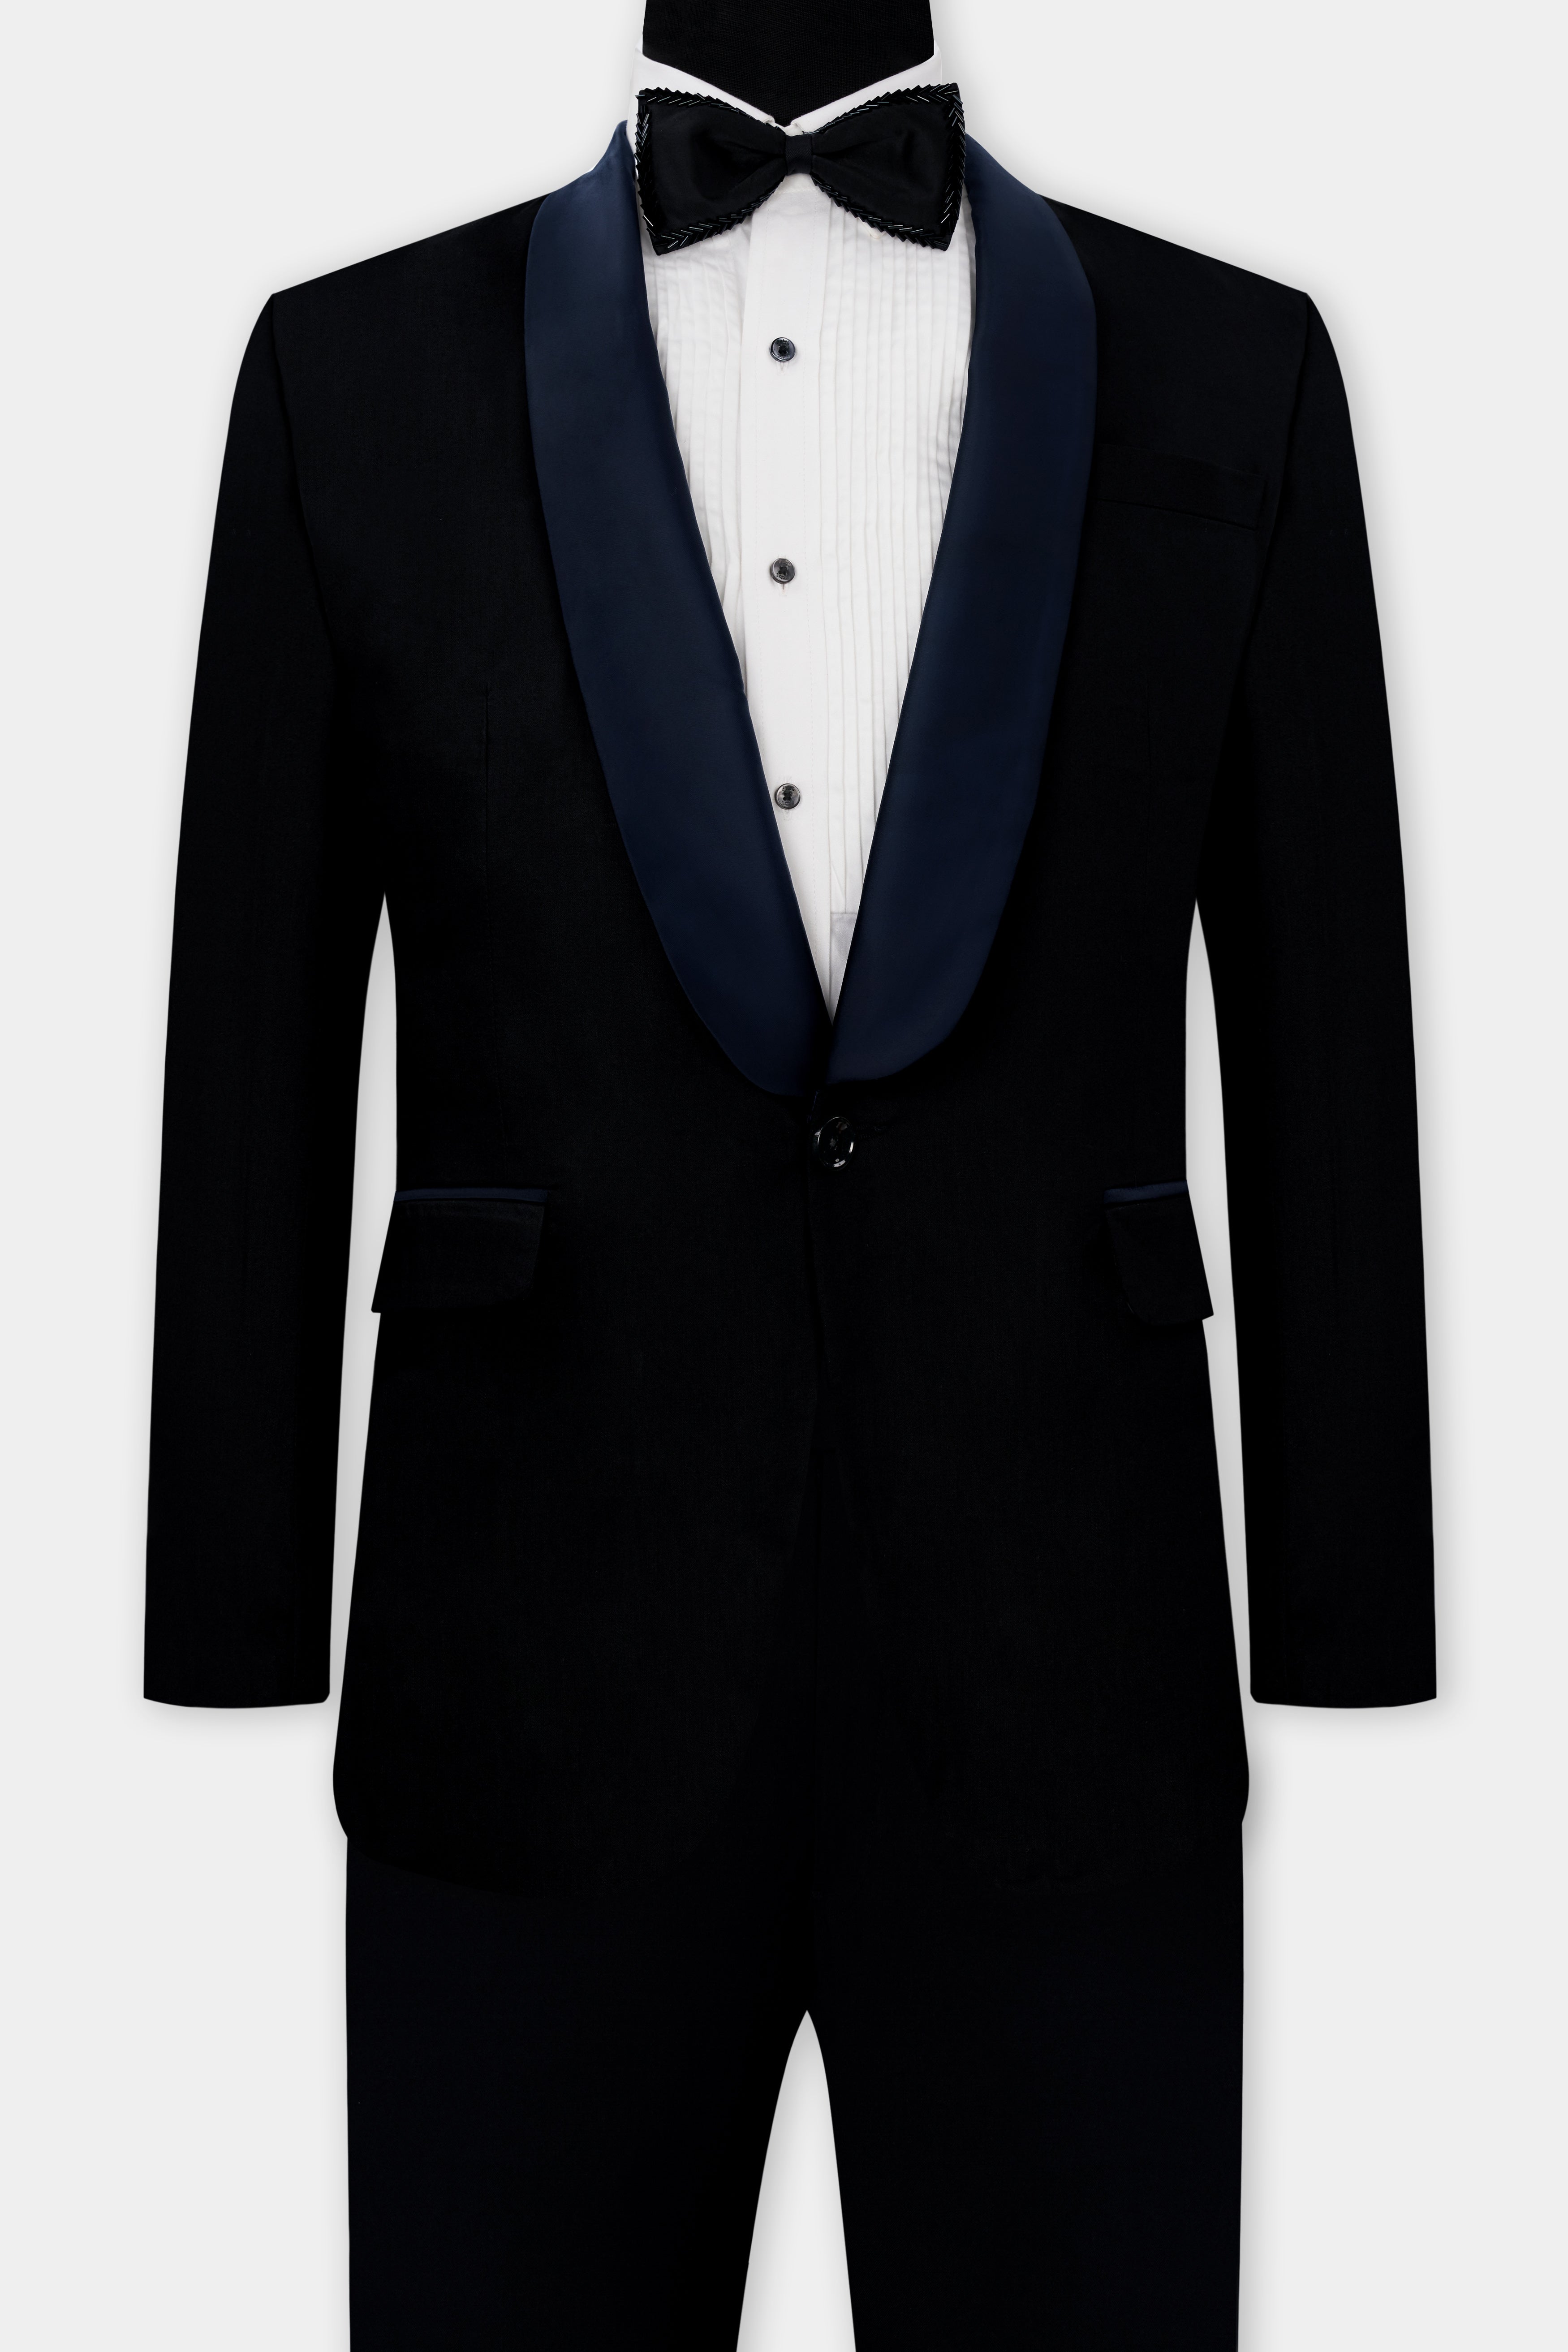 Jade Black Subtle Sheen with Blue lapel Tuxedo Suit